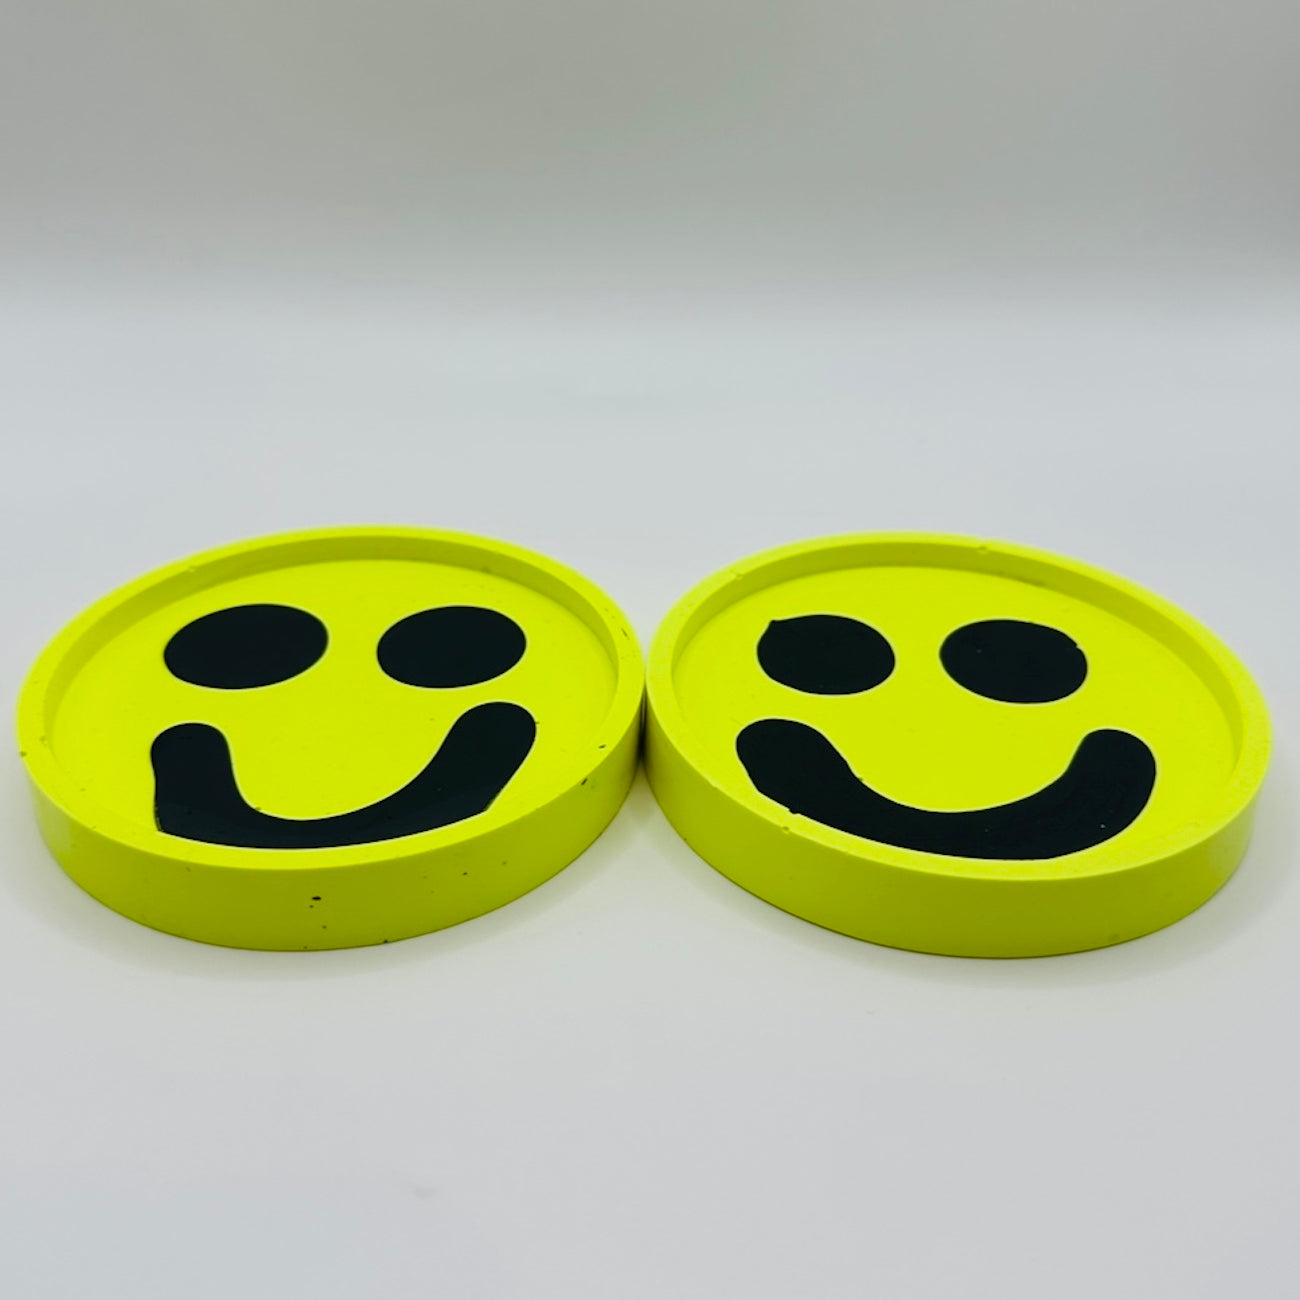 Coaster Set - Smiley - Neon Yellow